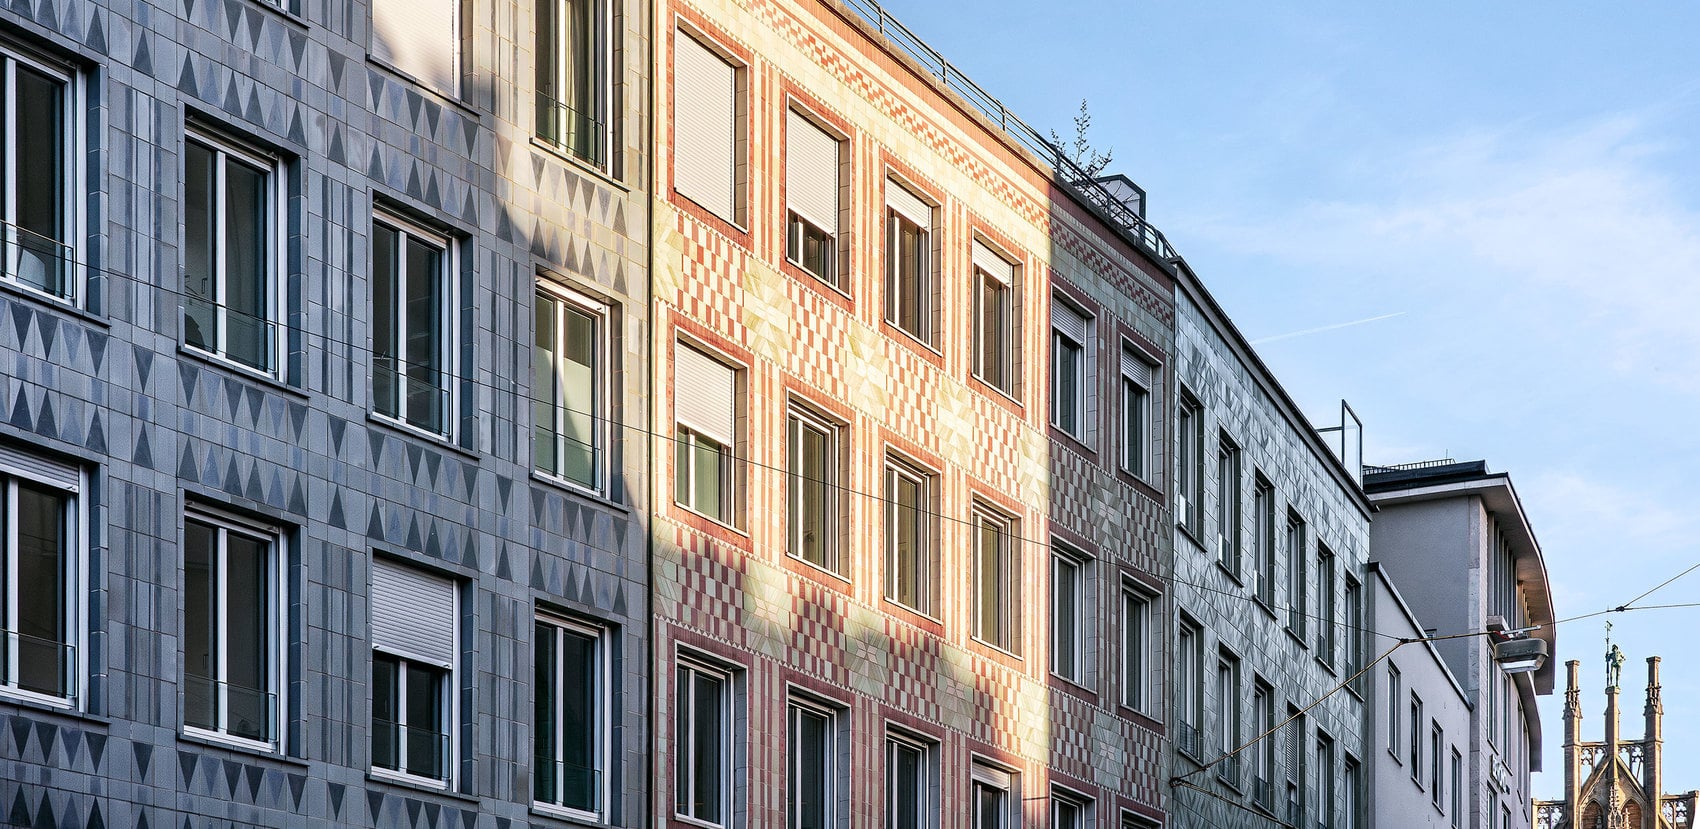 Existing ceramic façade – new windows.